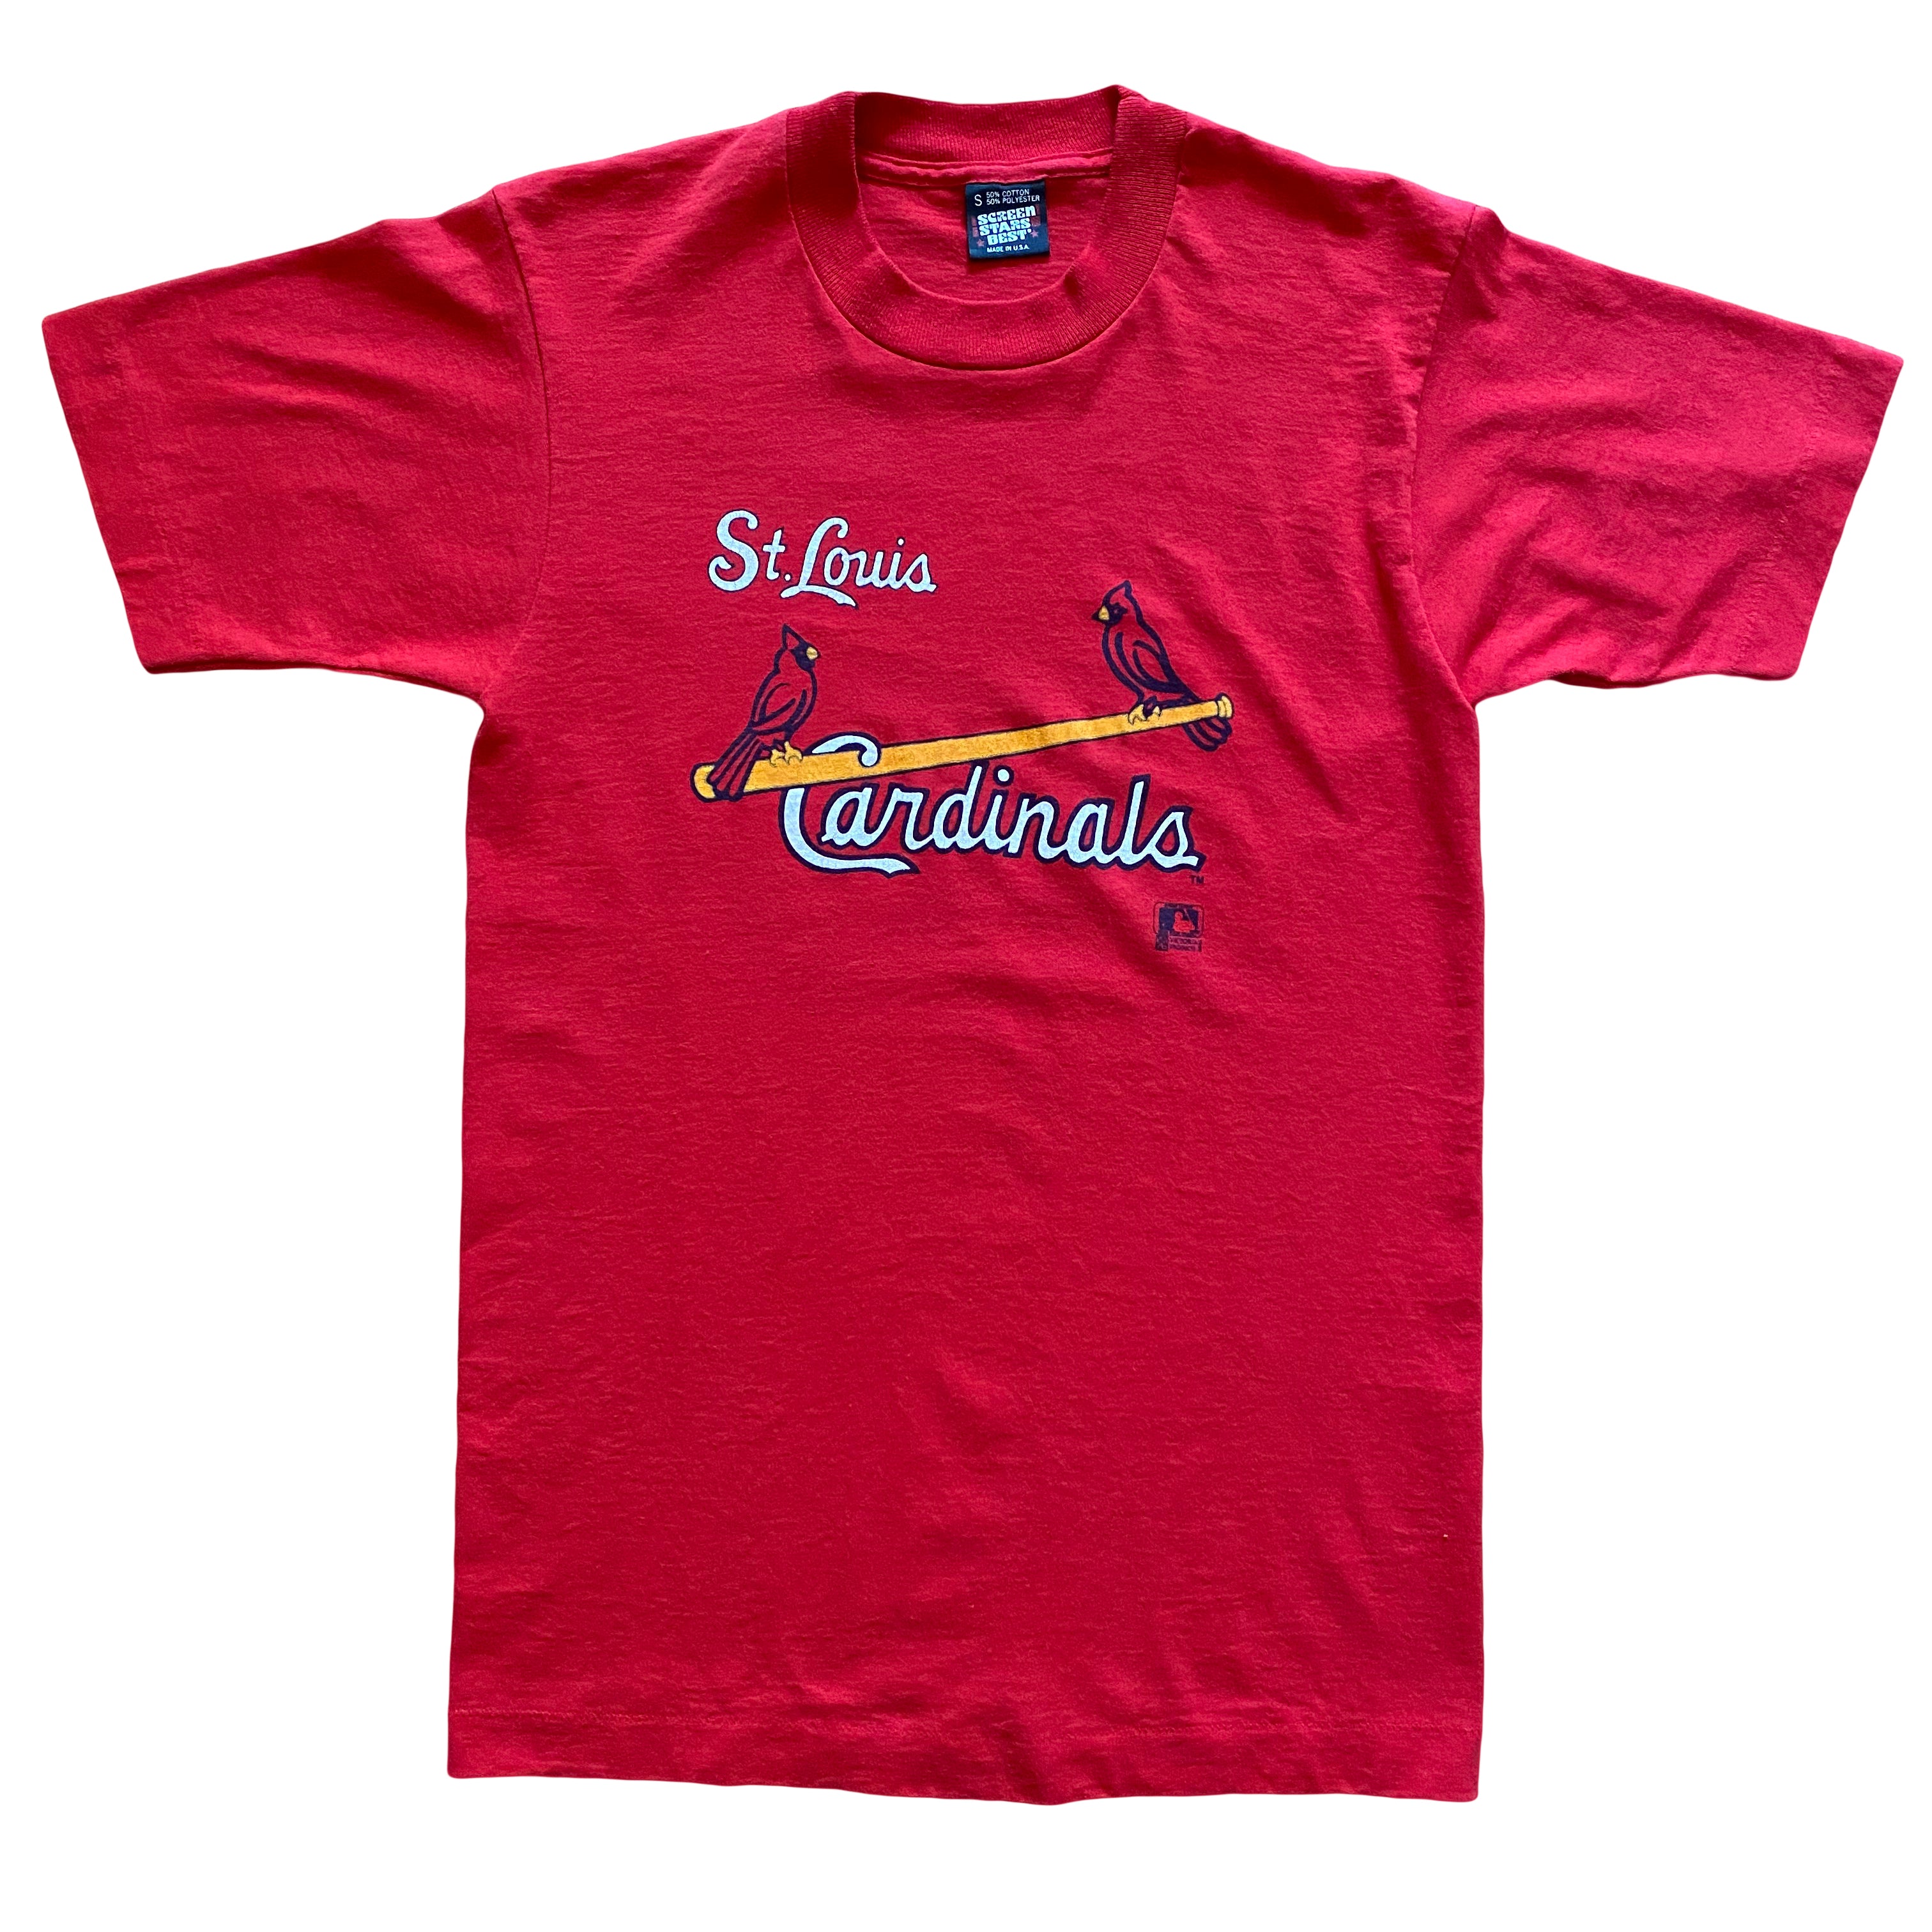 St. Louis Cardinals Baby Blue Carolina T-shirt 